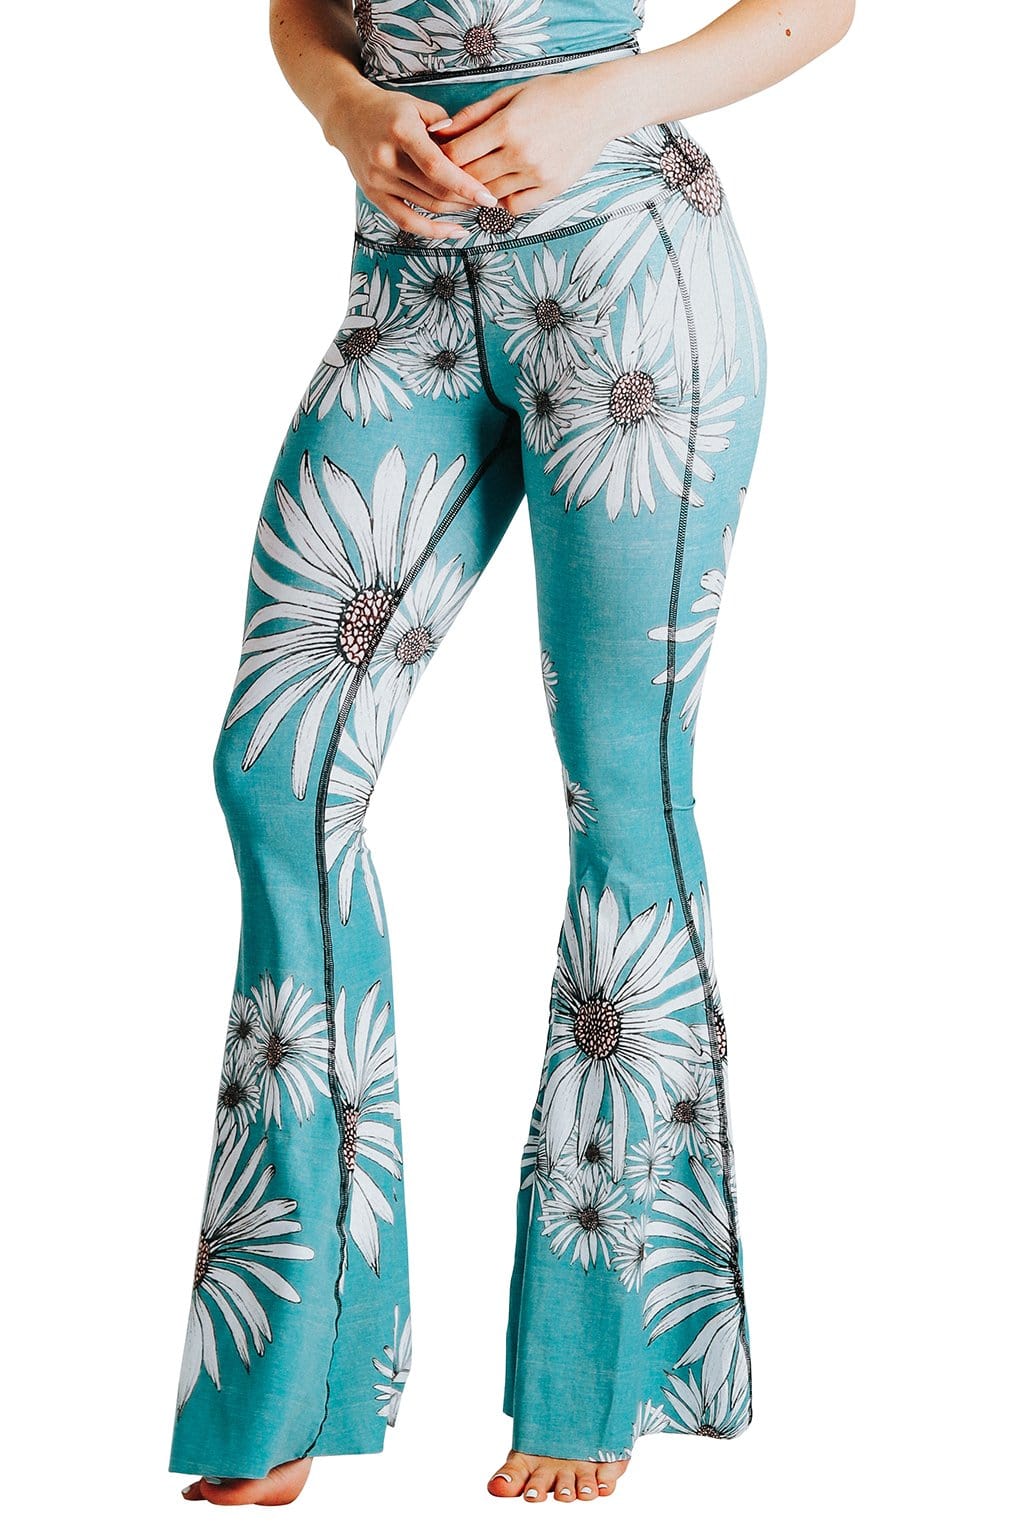 Hippie Flowers Bellbottom Jeans Size 28, Brand